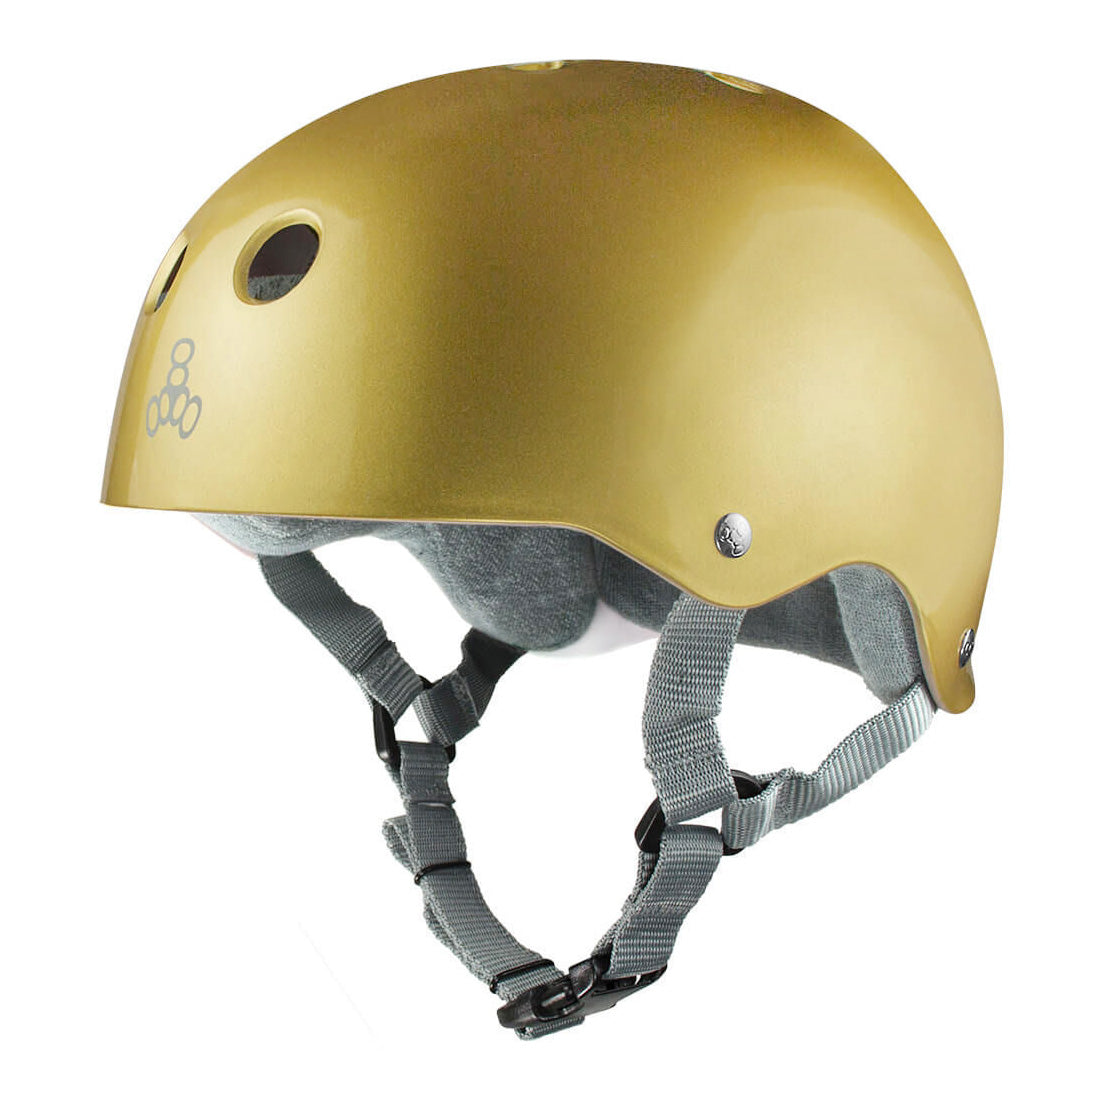 Triple 8 Skate SS Helmet - Gold Metallic Gloss Helmets